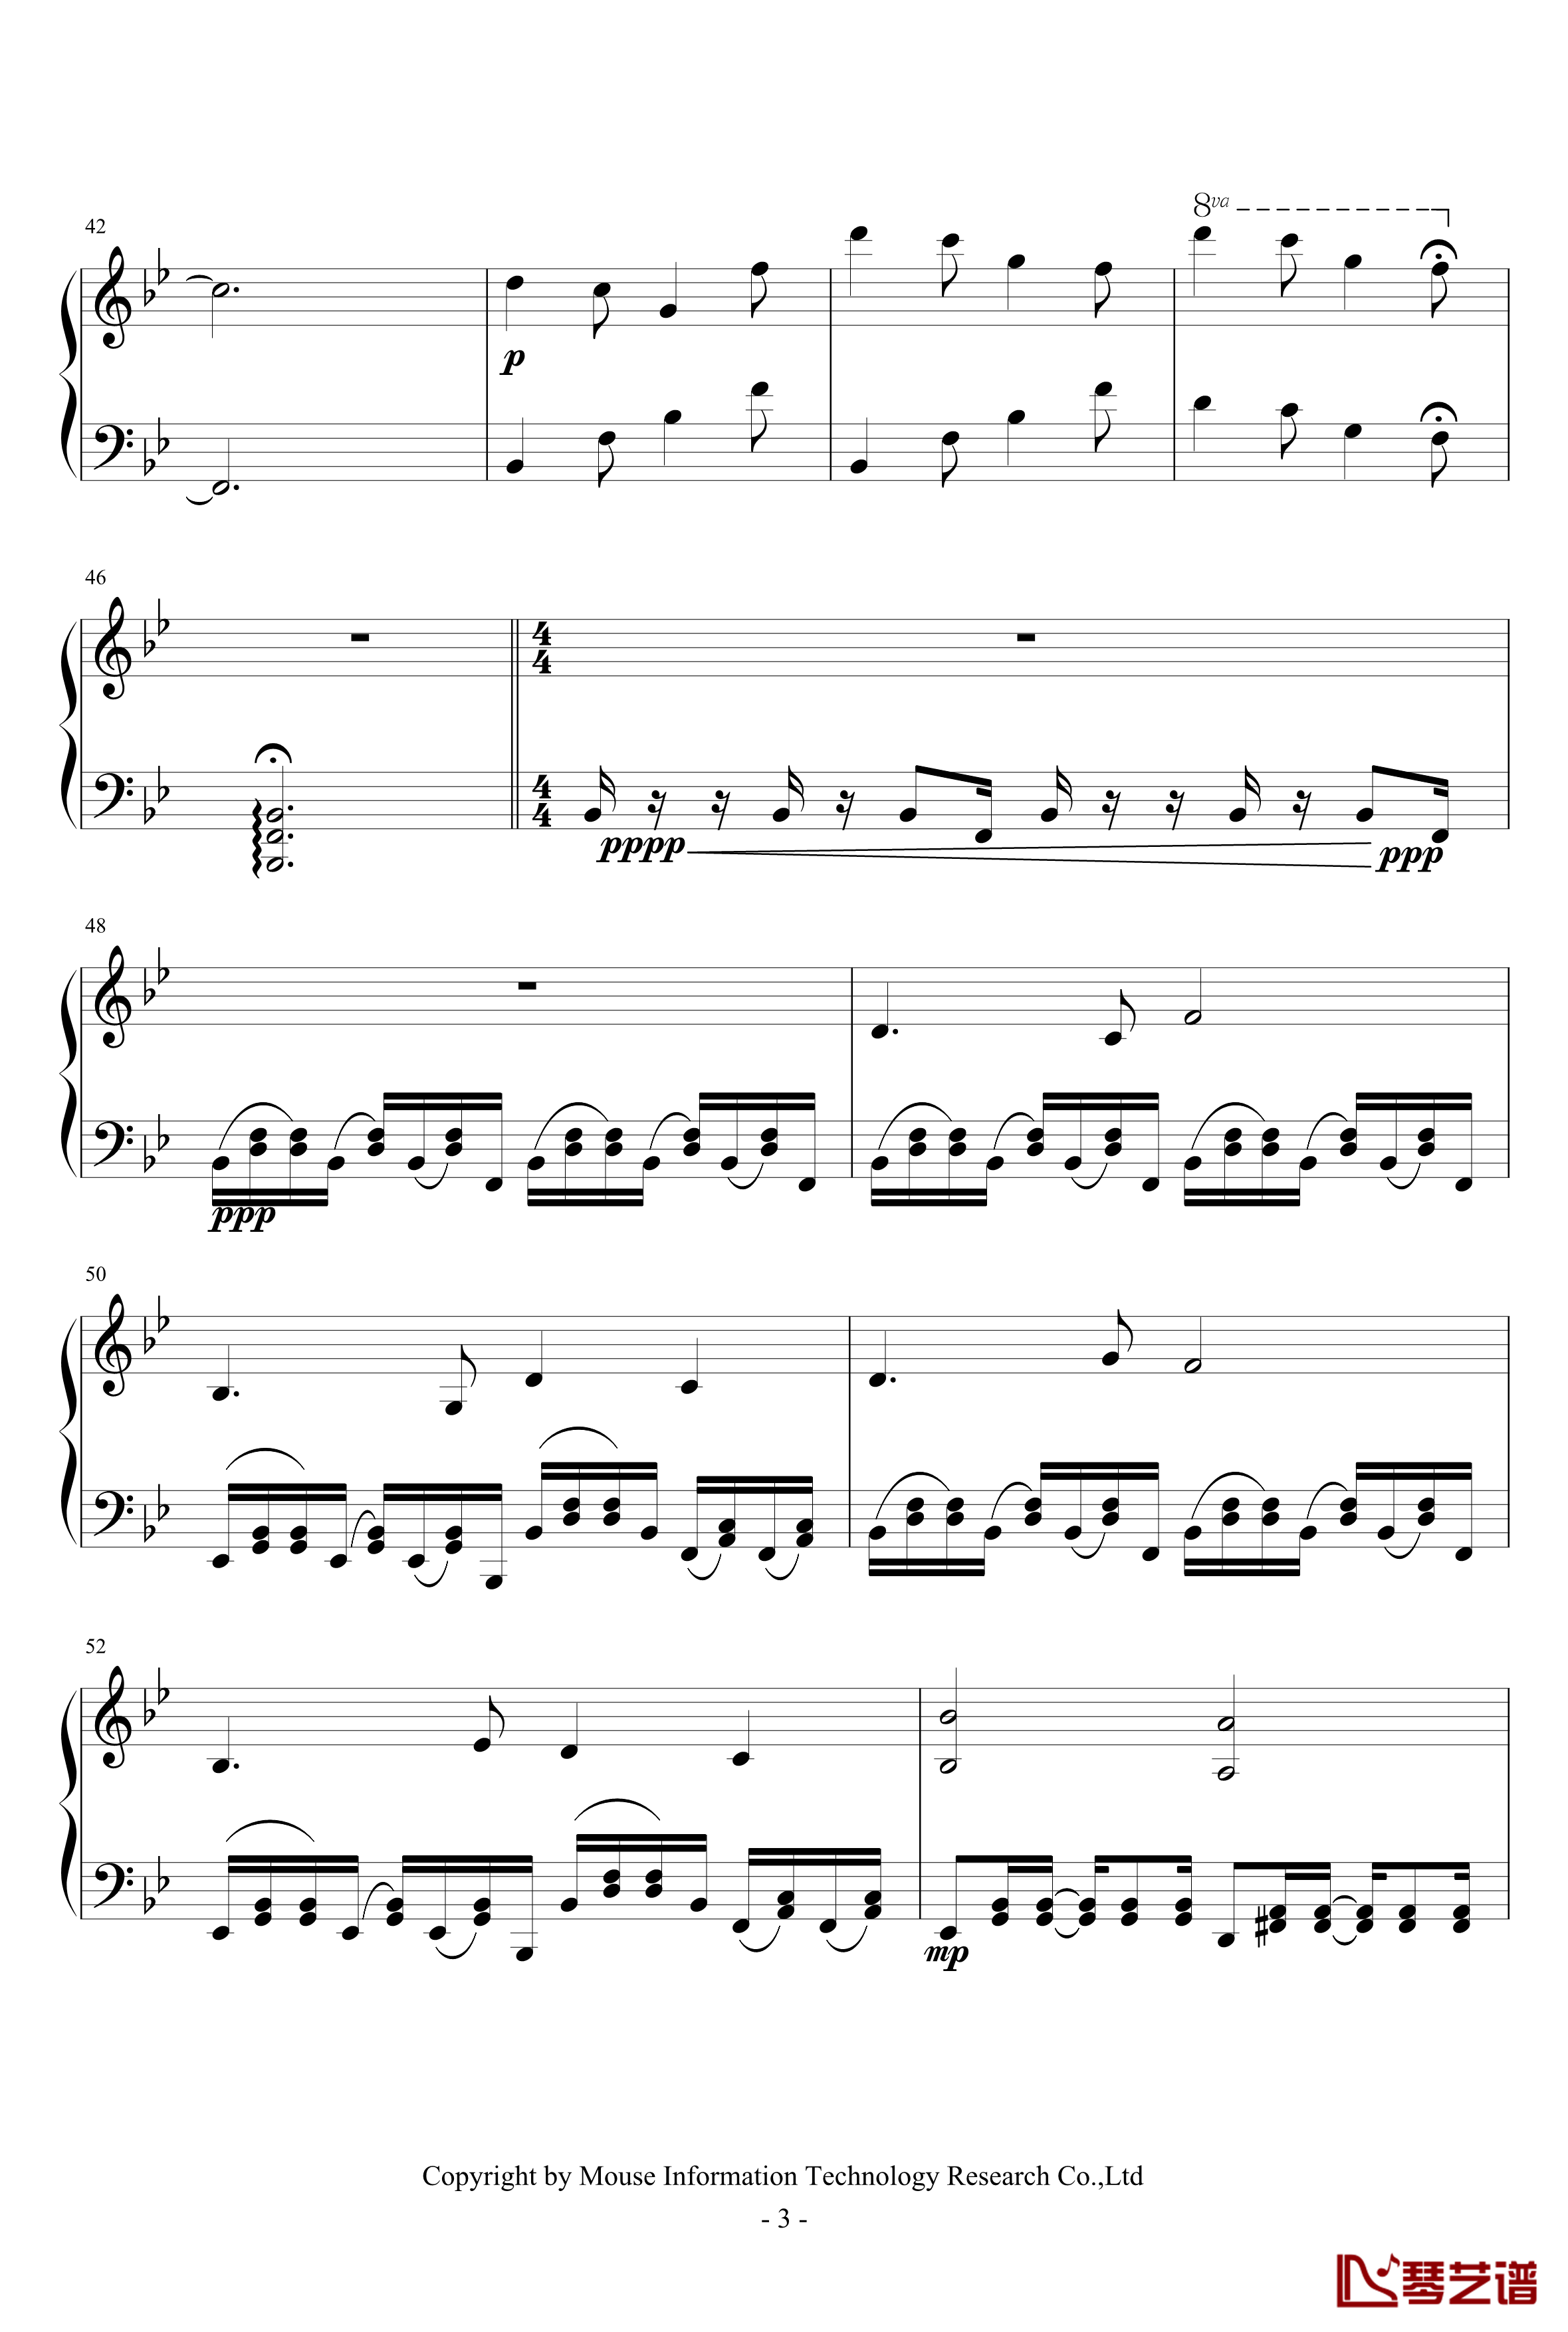 Alpha钢琴谱-0xffff-C418